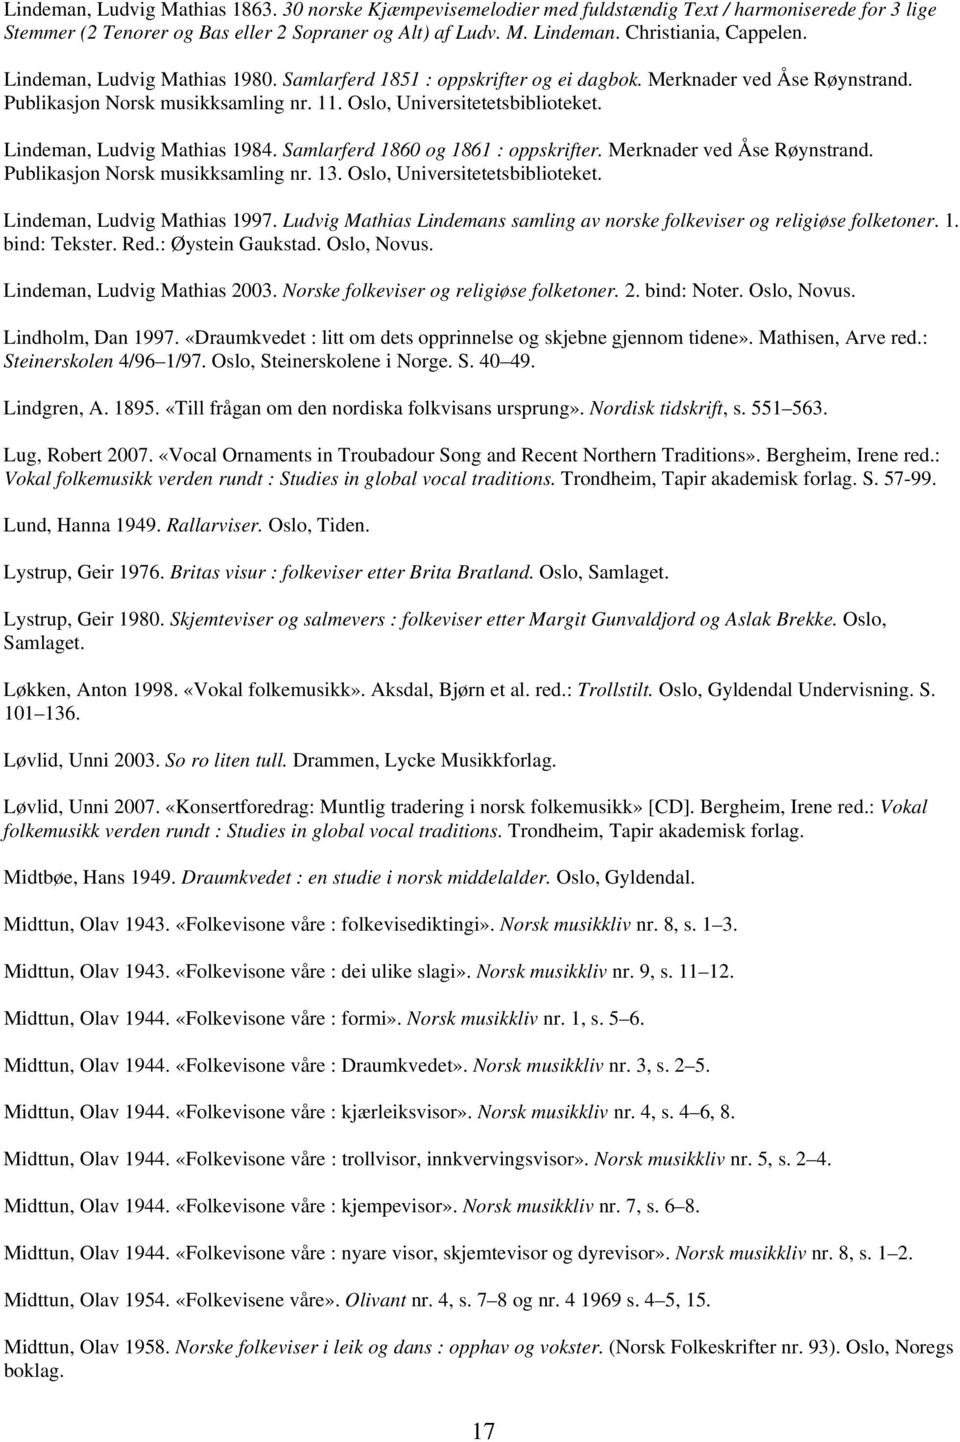 Lindeman, Ludvig Mathias 1984. Samlarferd 1860 og 1861 : oppskrifter. Merknader ved Åse Røynstrand. Publikasjon Norsk musikksamling nr. 13. Oslo, Universitetetsbiblioteket.